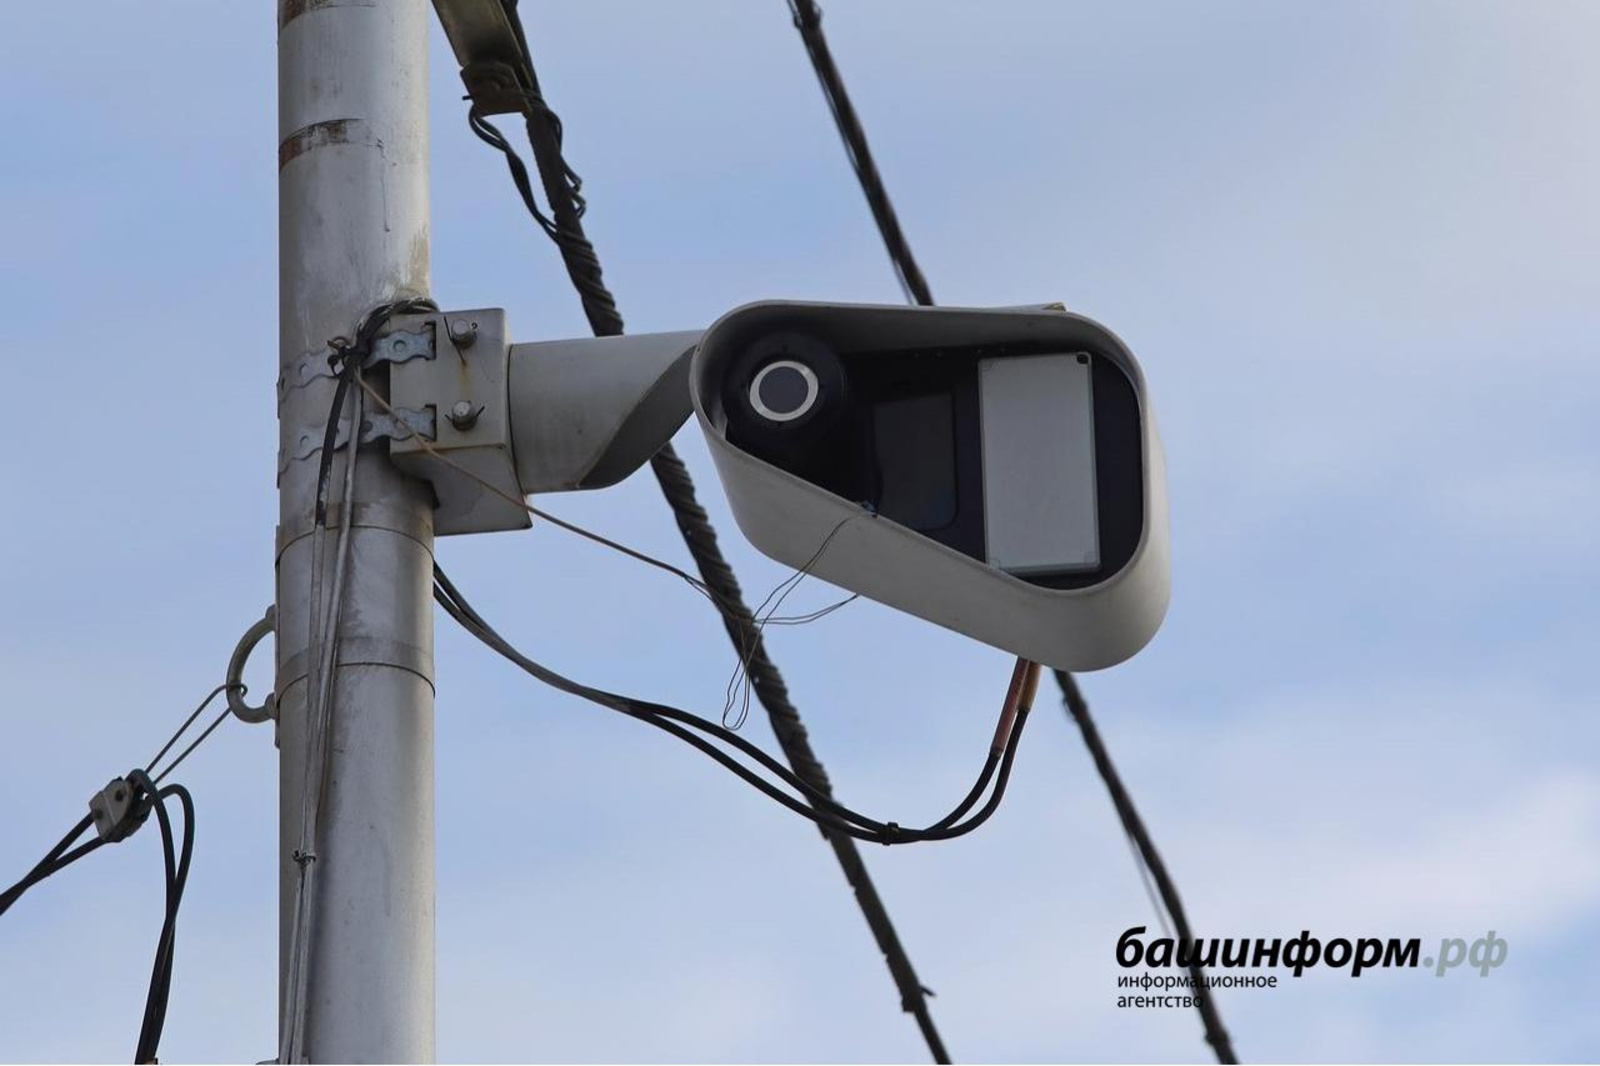 В Башкирии на федеральной трассе ставят камеры фотовидеофиксации нарушений